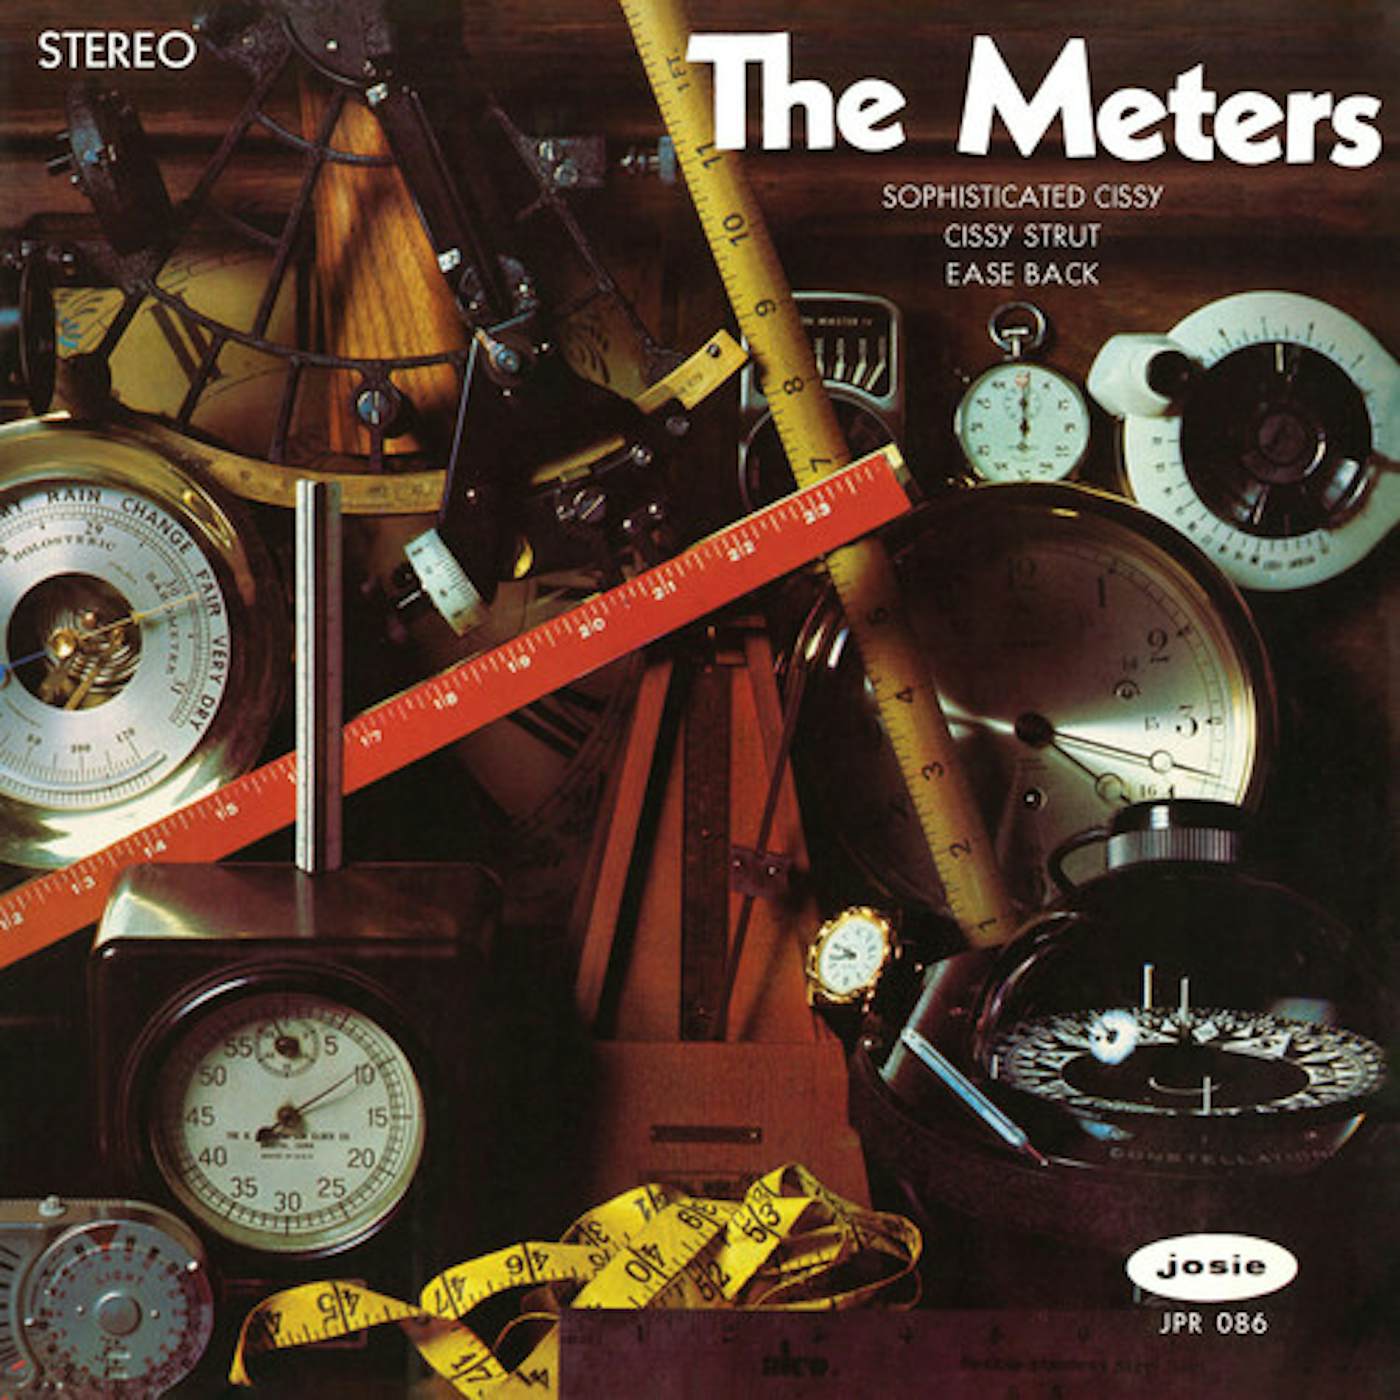 The Meters Vinyl Record